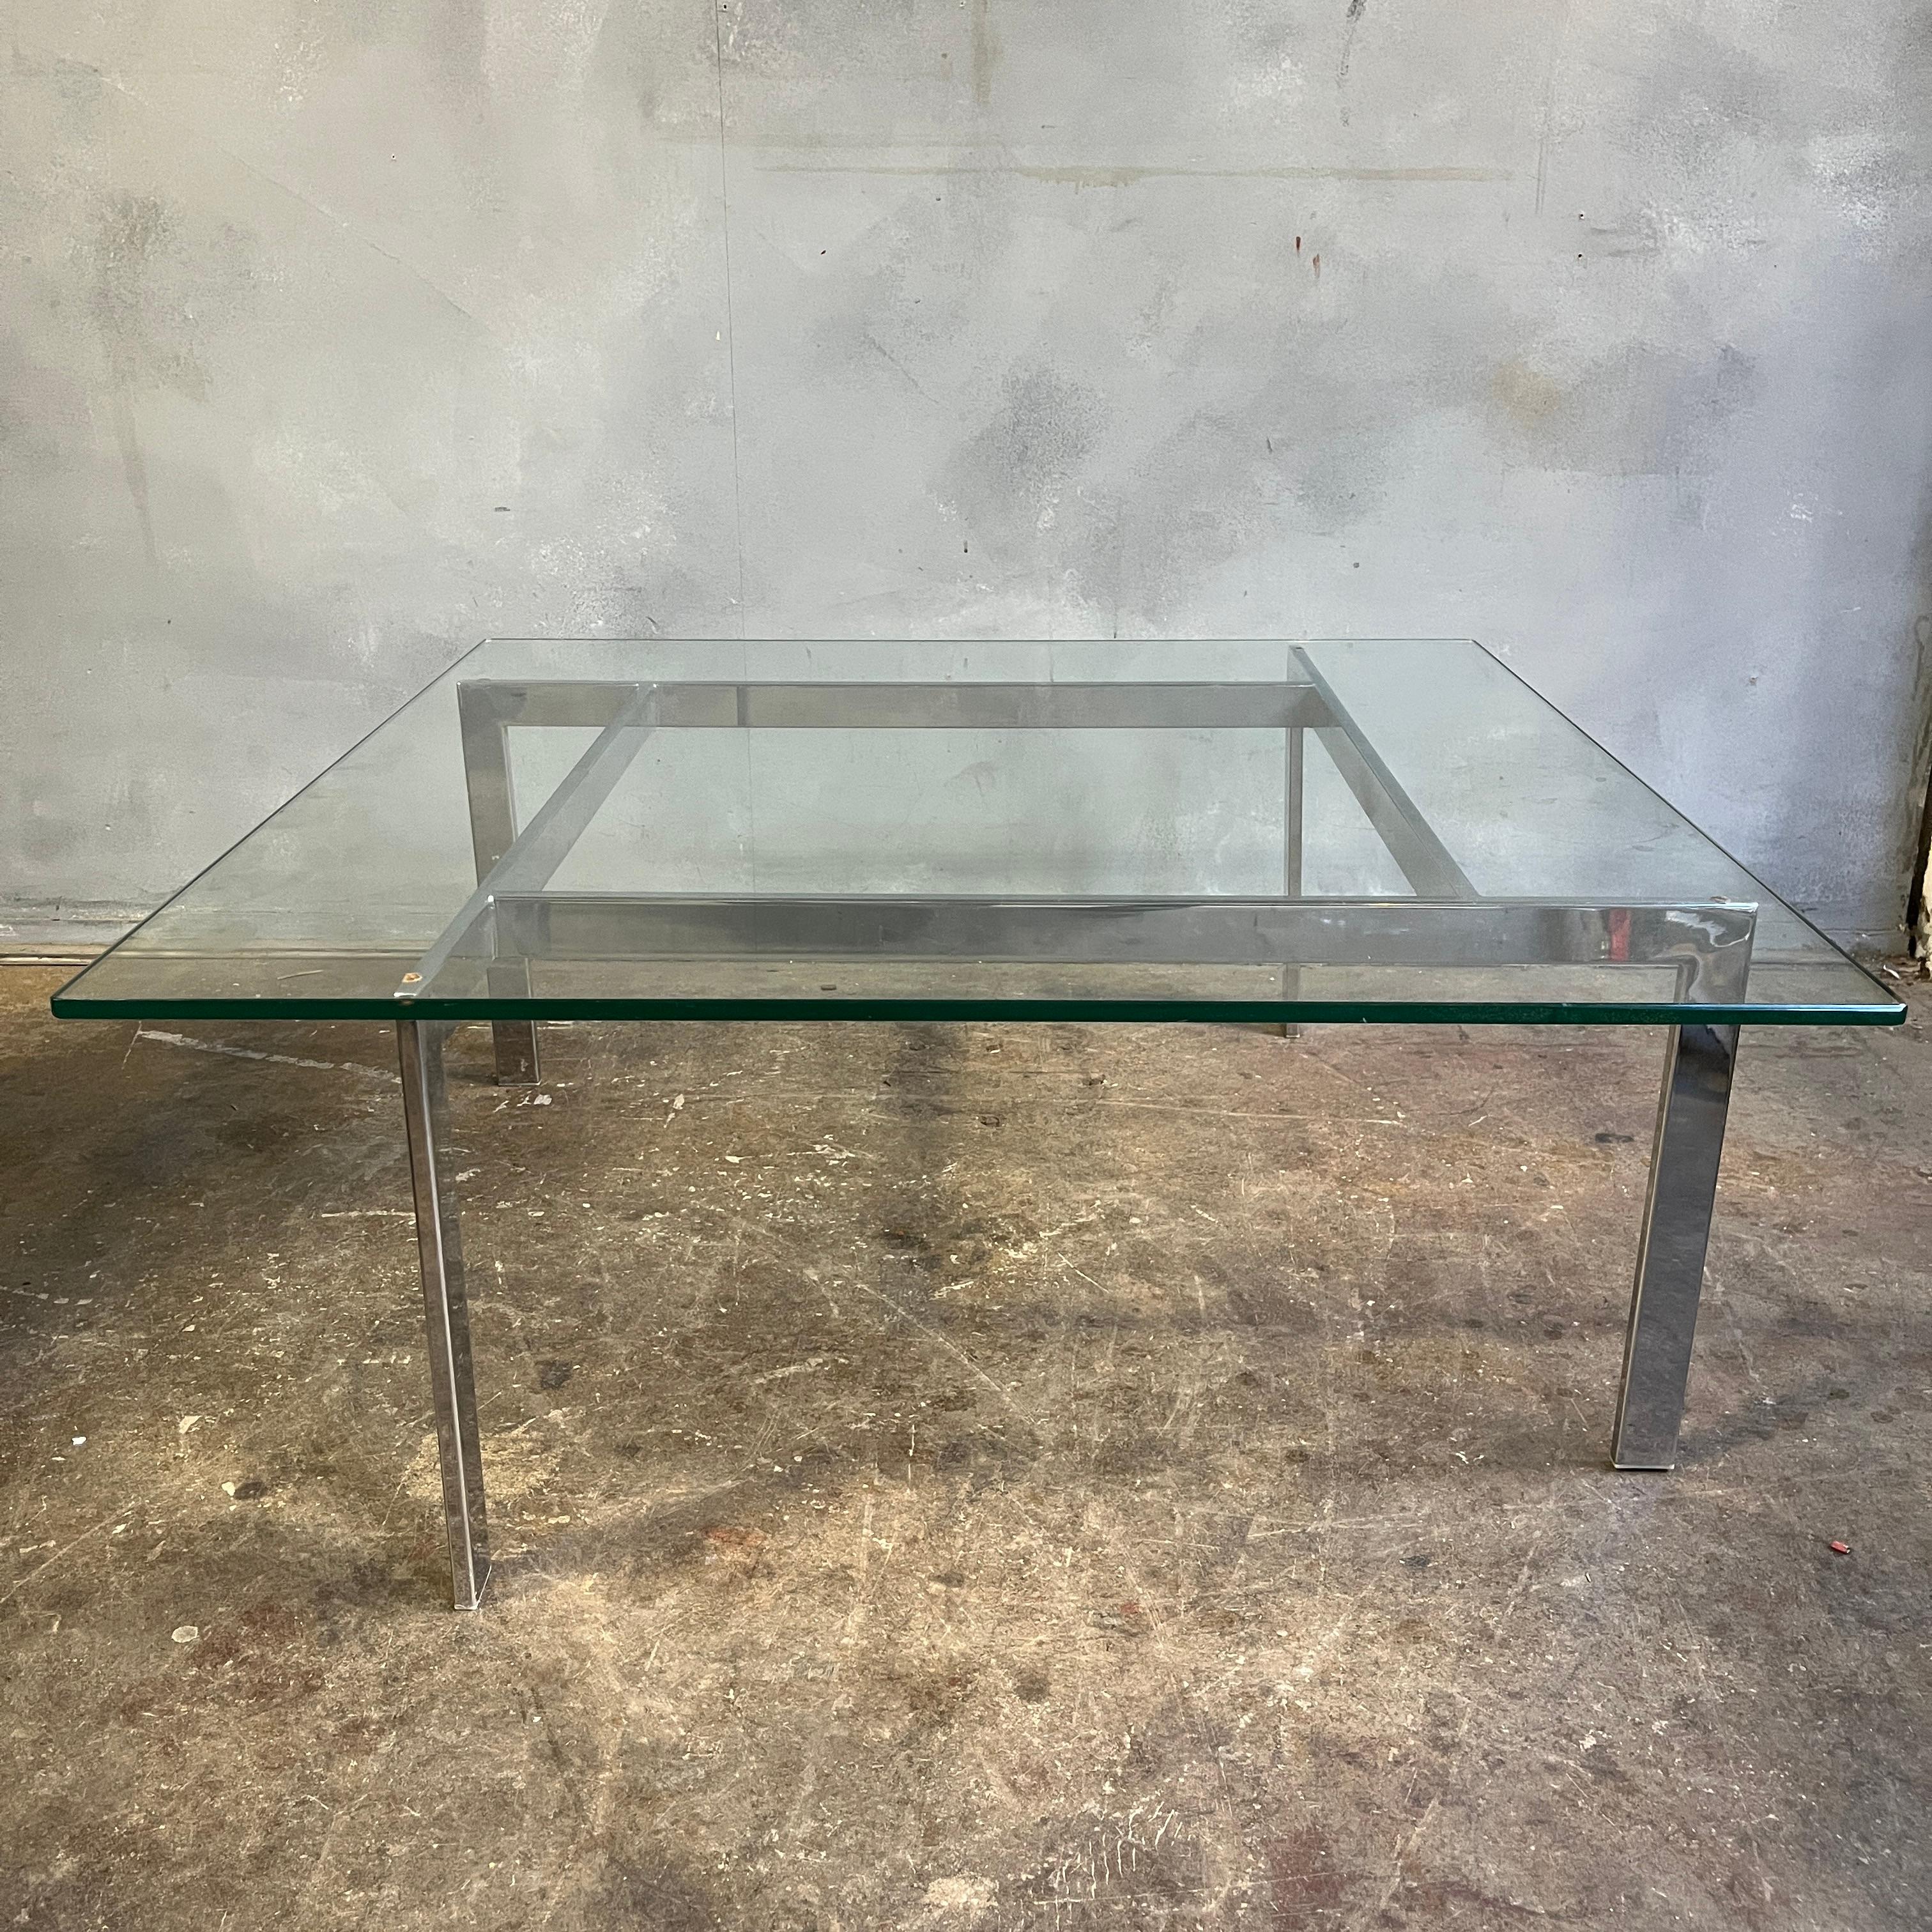 Magnifique table basse chromée avec plateau en verre épais aux bords verts. Le chrome est très propre. Il a l'allure de Kjærholm ou de Mies van her Rohe. 